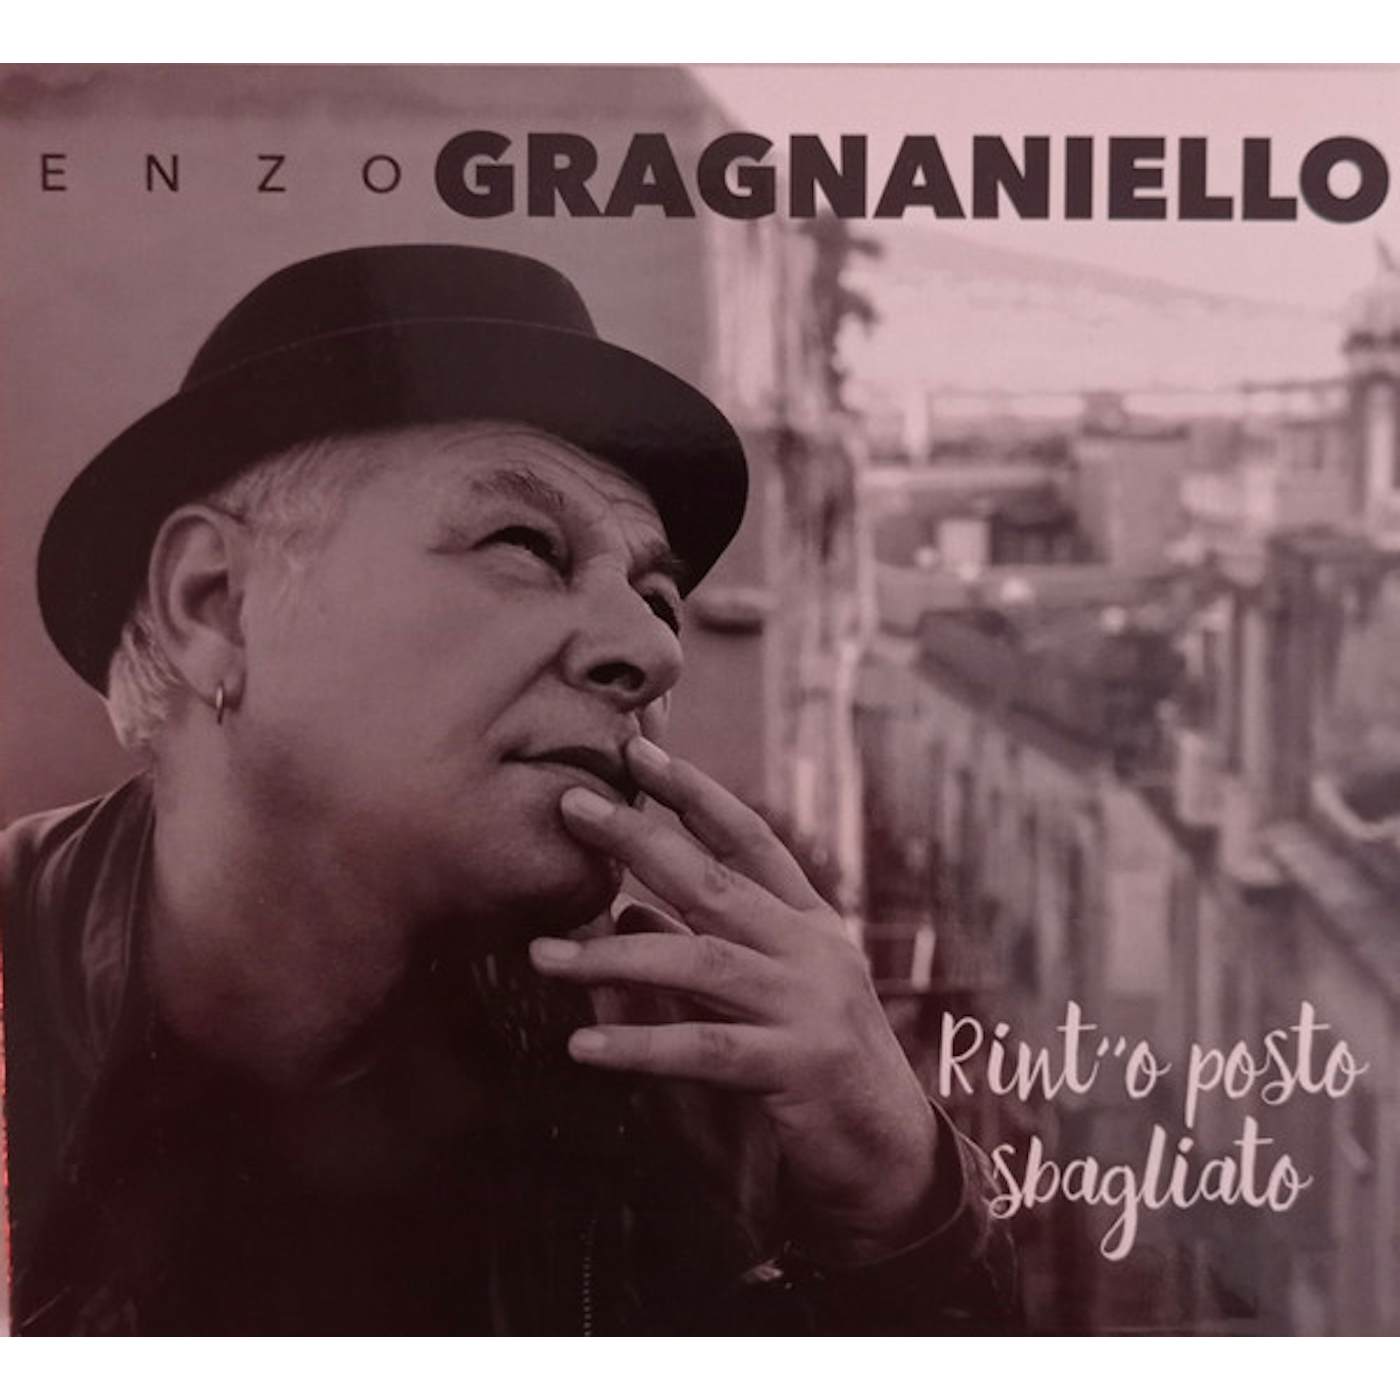 Enzo Gragnaniello RINT'O POSTO SBAGLIATO Vinyl Record